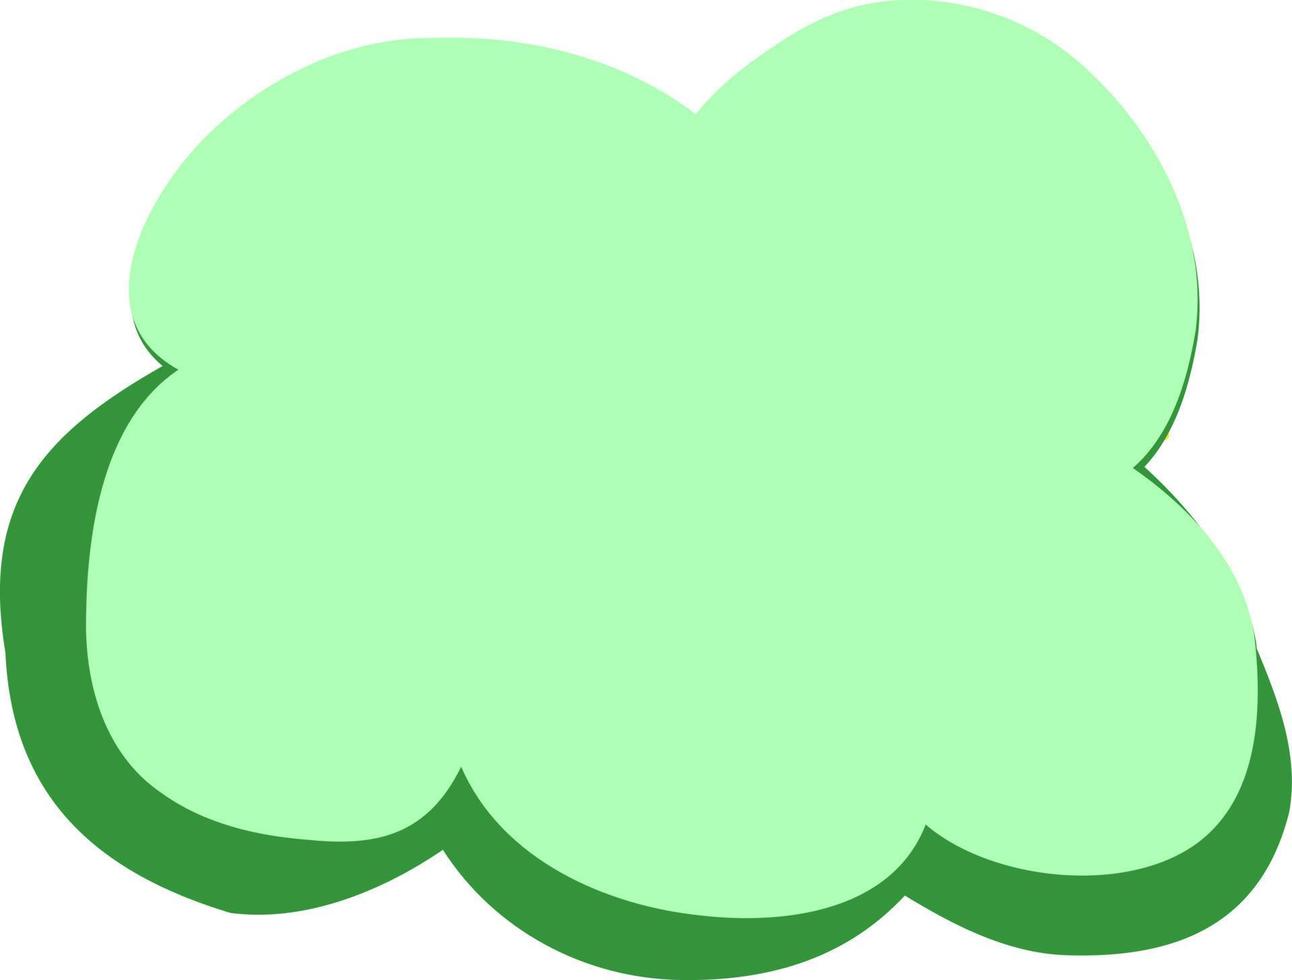 Volumetric light green cloud. vector